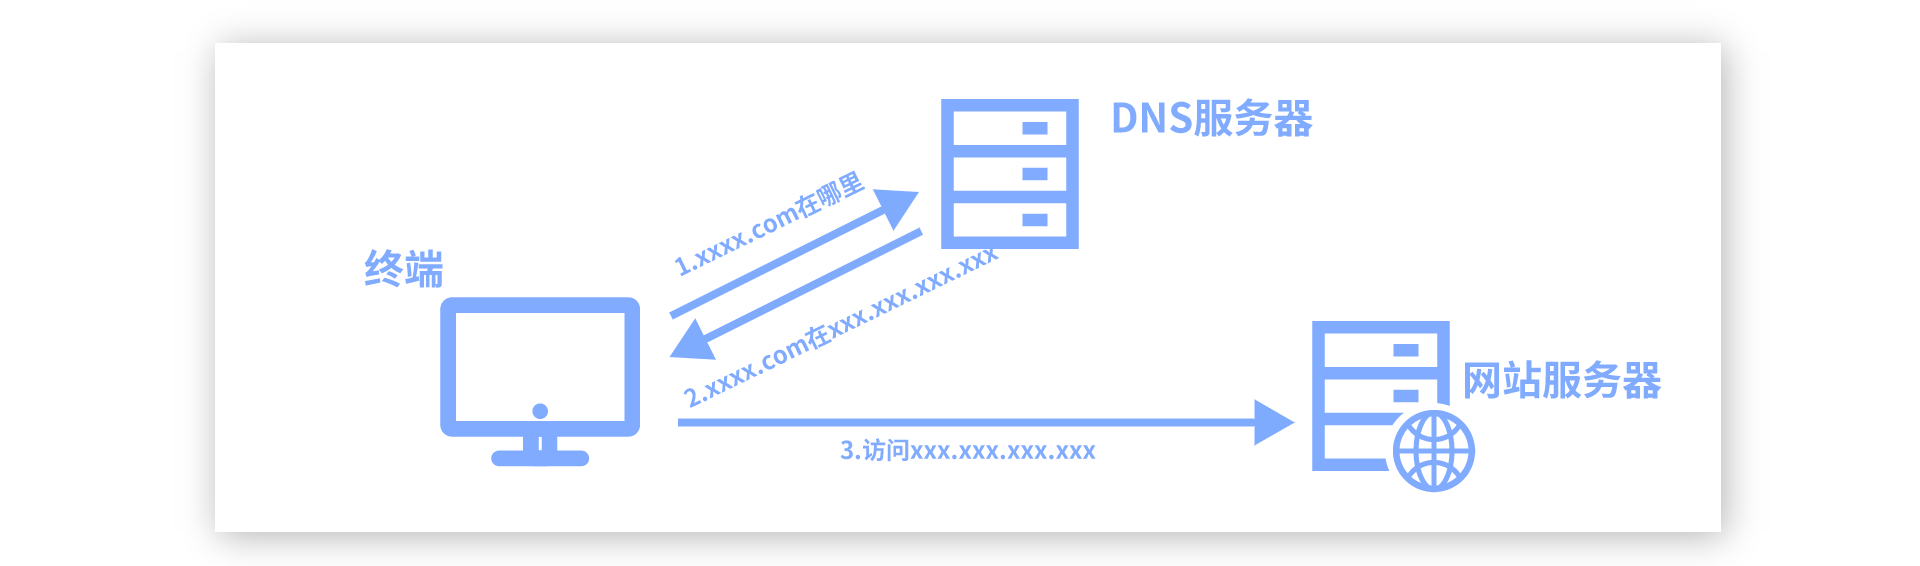 DNS的原理介绍